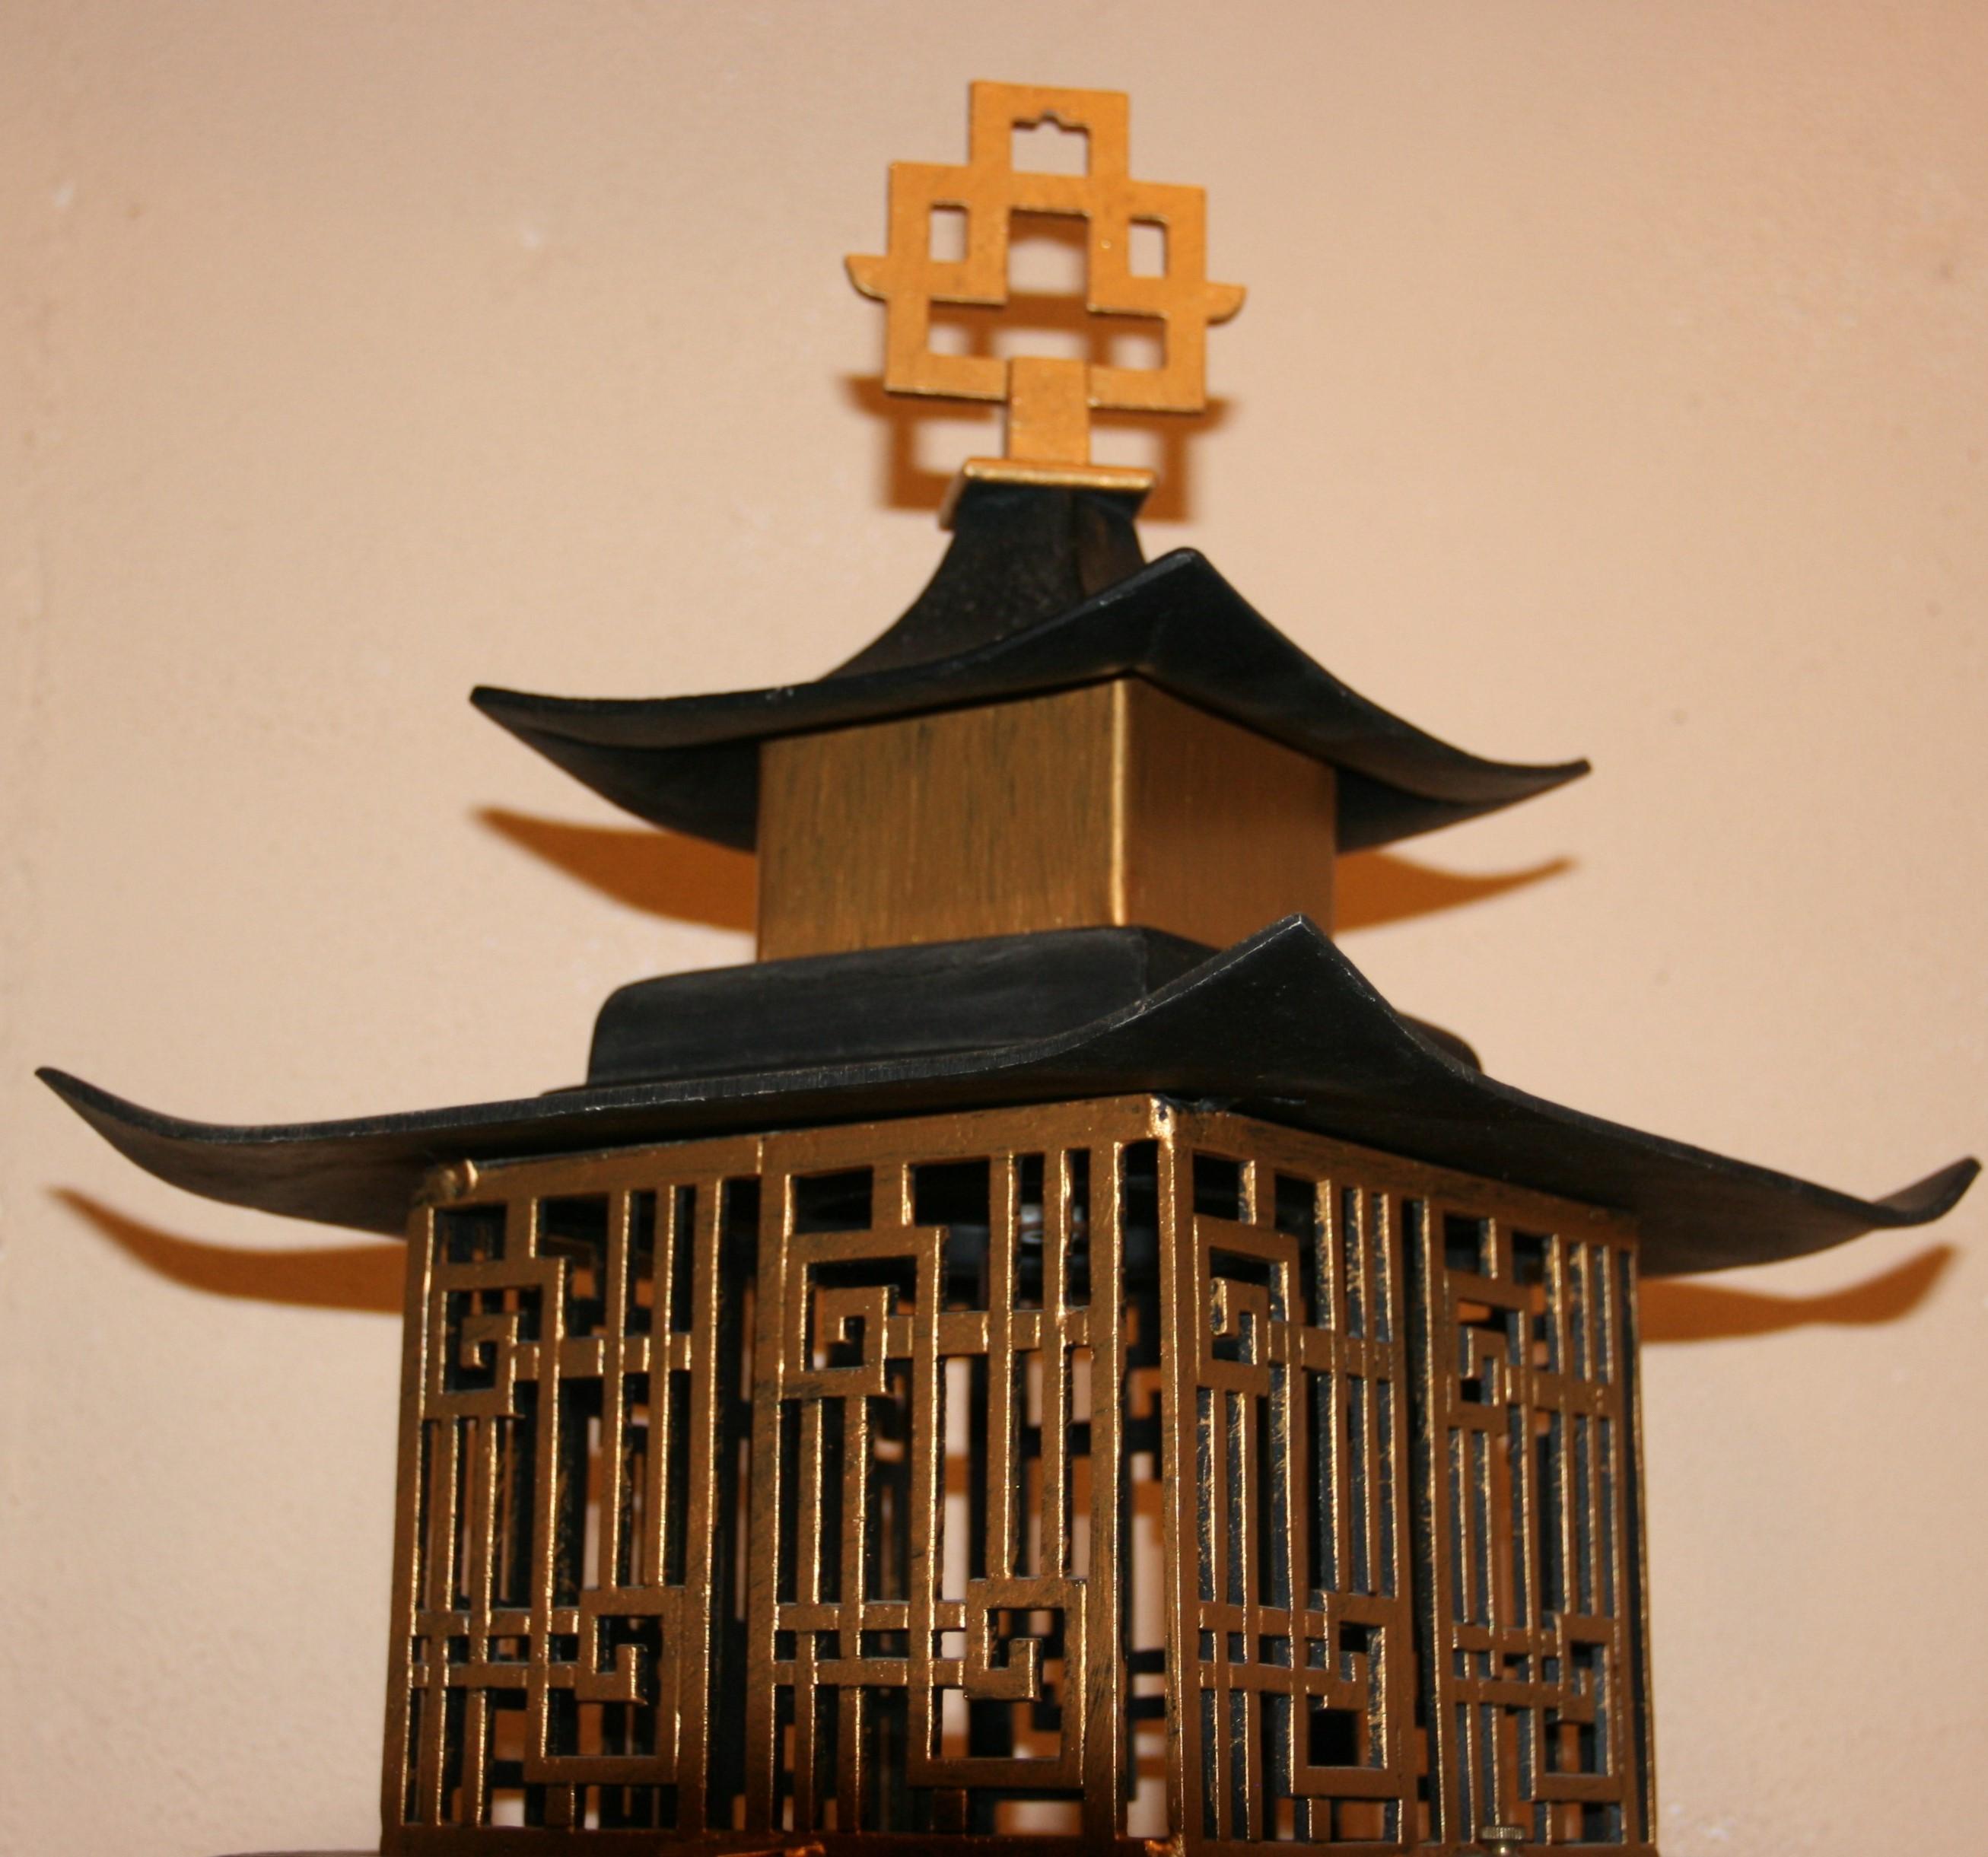 hanging pagoda lantern